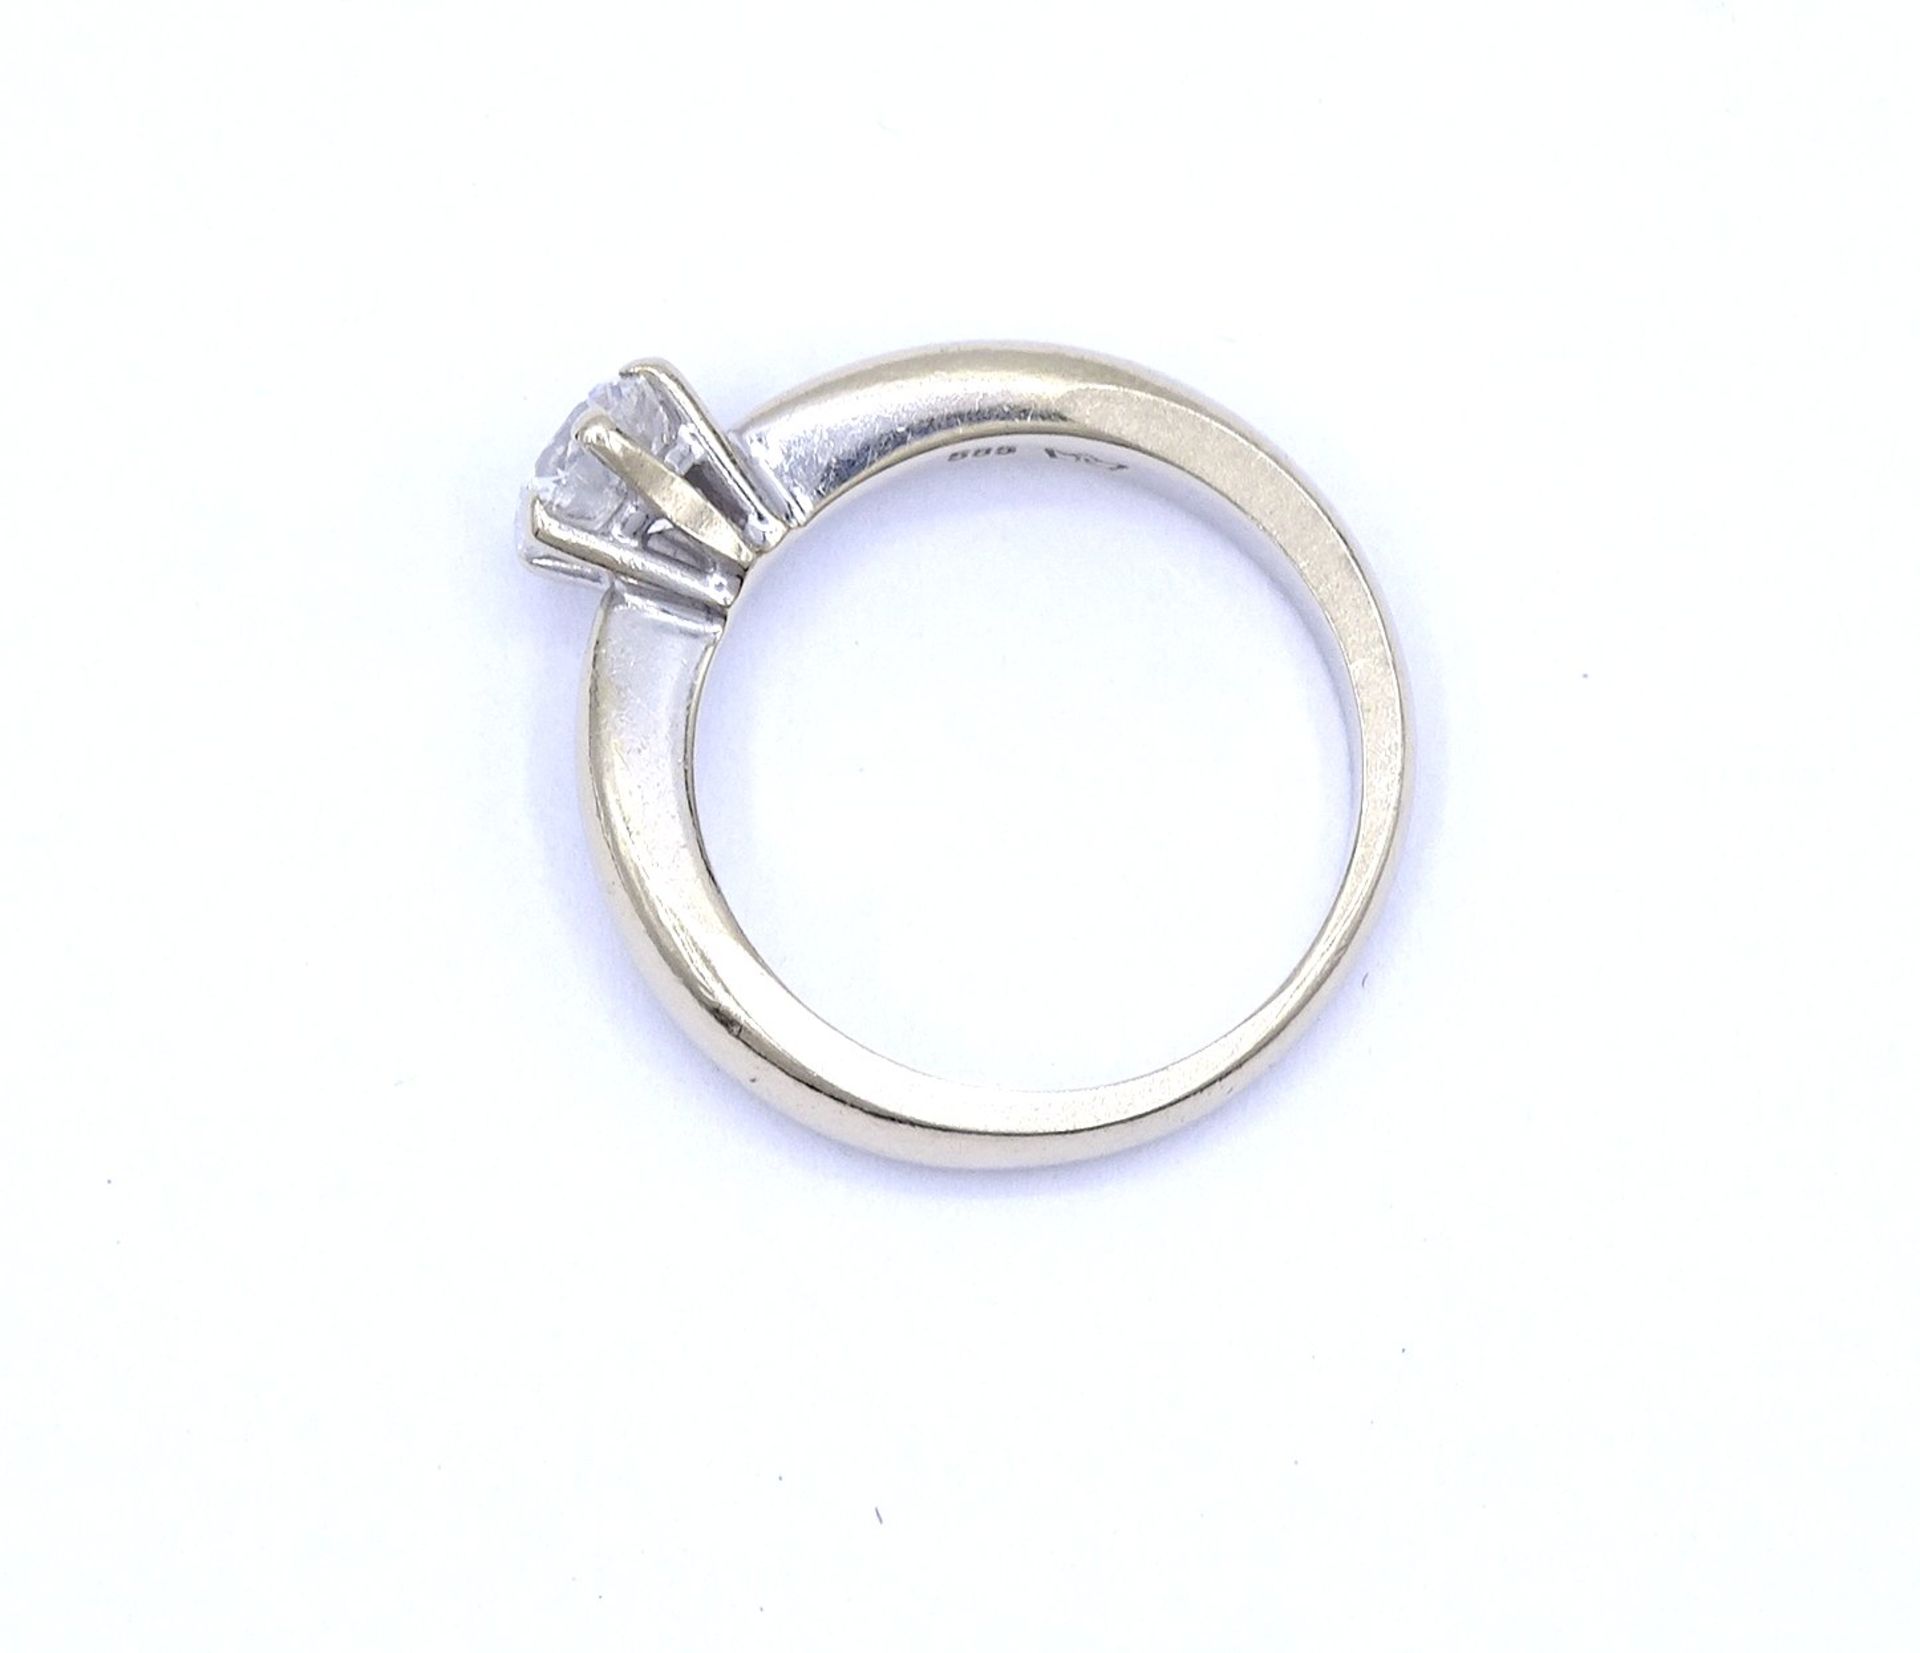 Solitär Brillant Ring, WG 585/000, Brillant 1,0ct., si, i-j, Brillant mit 3 kleinen Abplatzer, 6,1g - Bild 5 aus 7